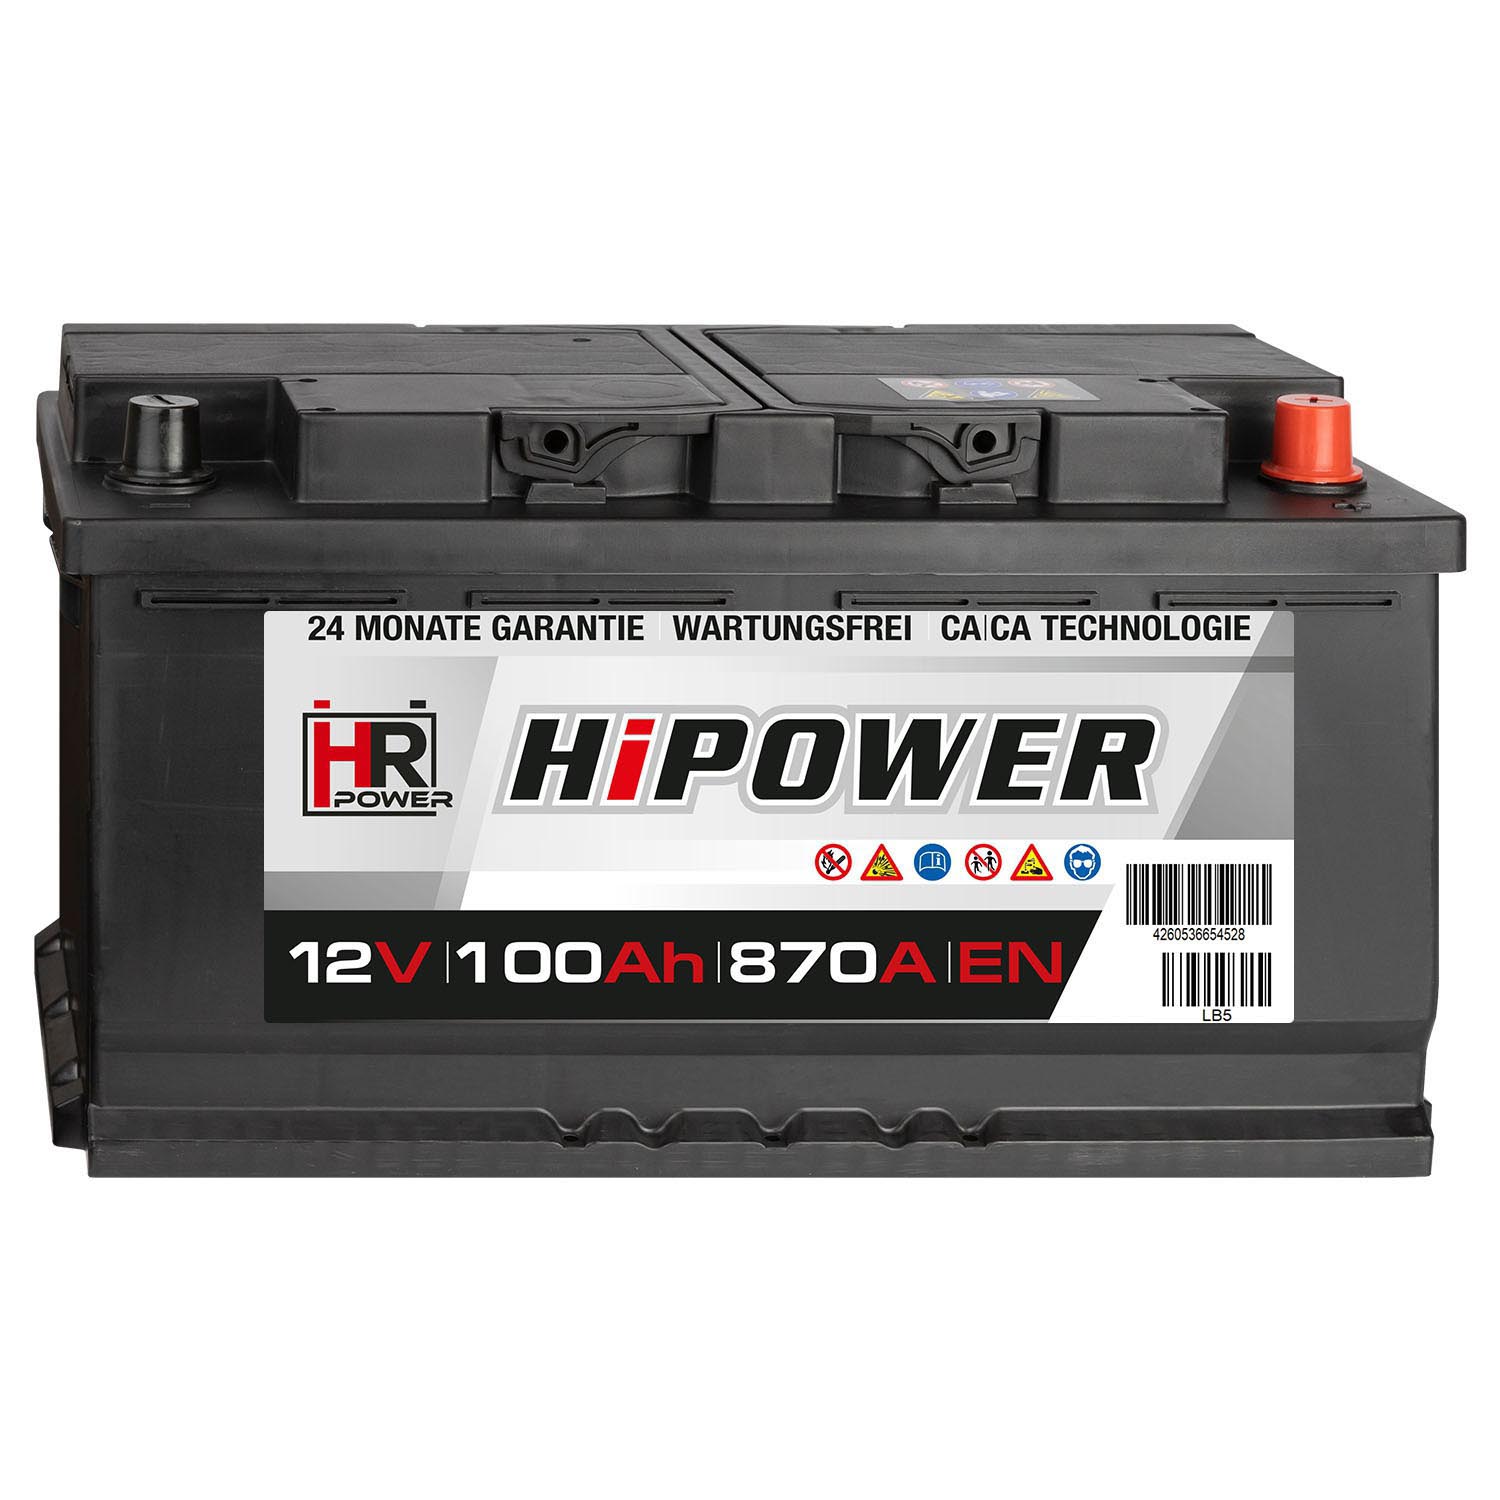 Autobatterie HAMMER 12V 100Ah Starterbatterie WARTUNGSFREI TOP ANGEBOT NEU